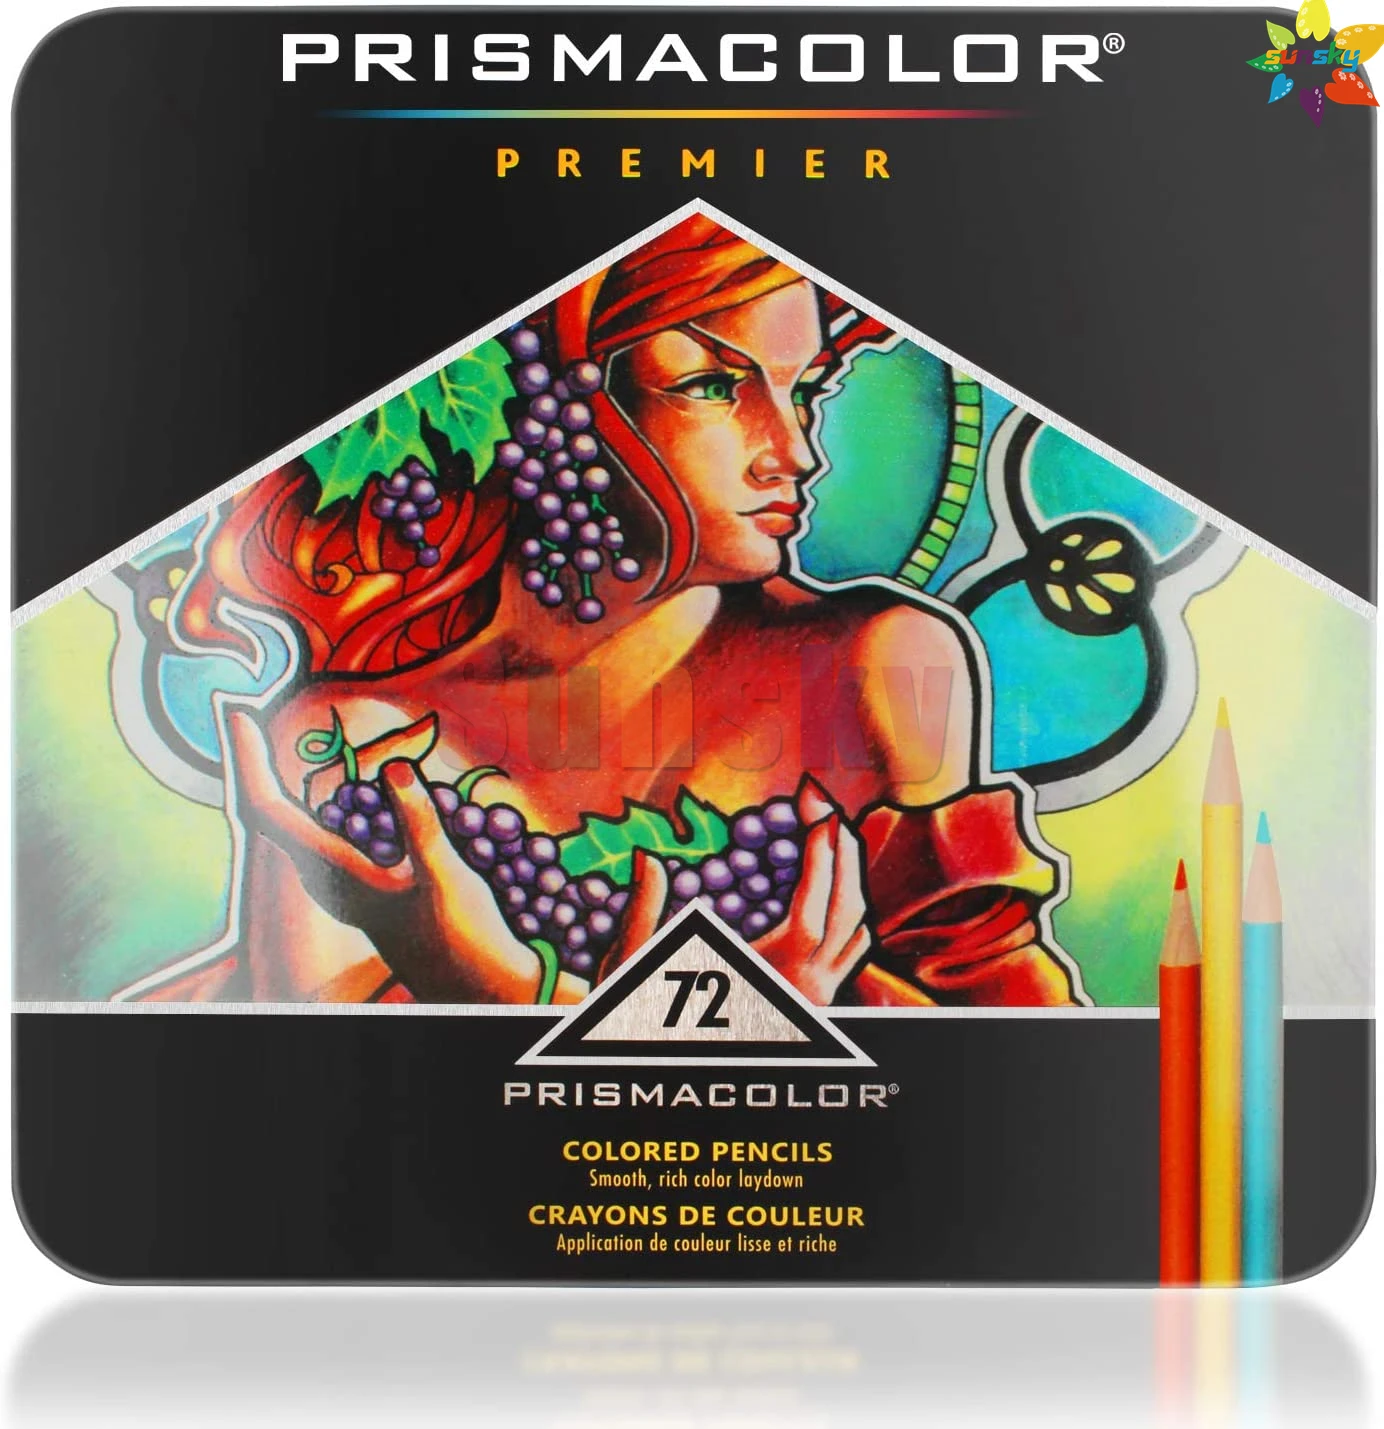 https://ae01.alicdn.com/kf/Hc61d9a64dabf40cb958147fde0587b74E/Usa-Prismacolor-Premier-Colored-Pencils-Soft-Core-72-Pack-Oily-Lapiz-De-Cor-Art-Pencils-Painting.jpg